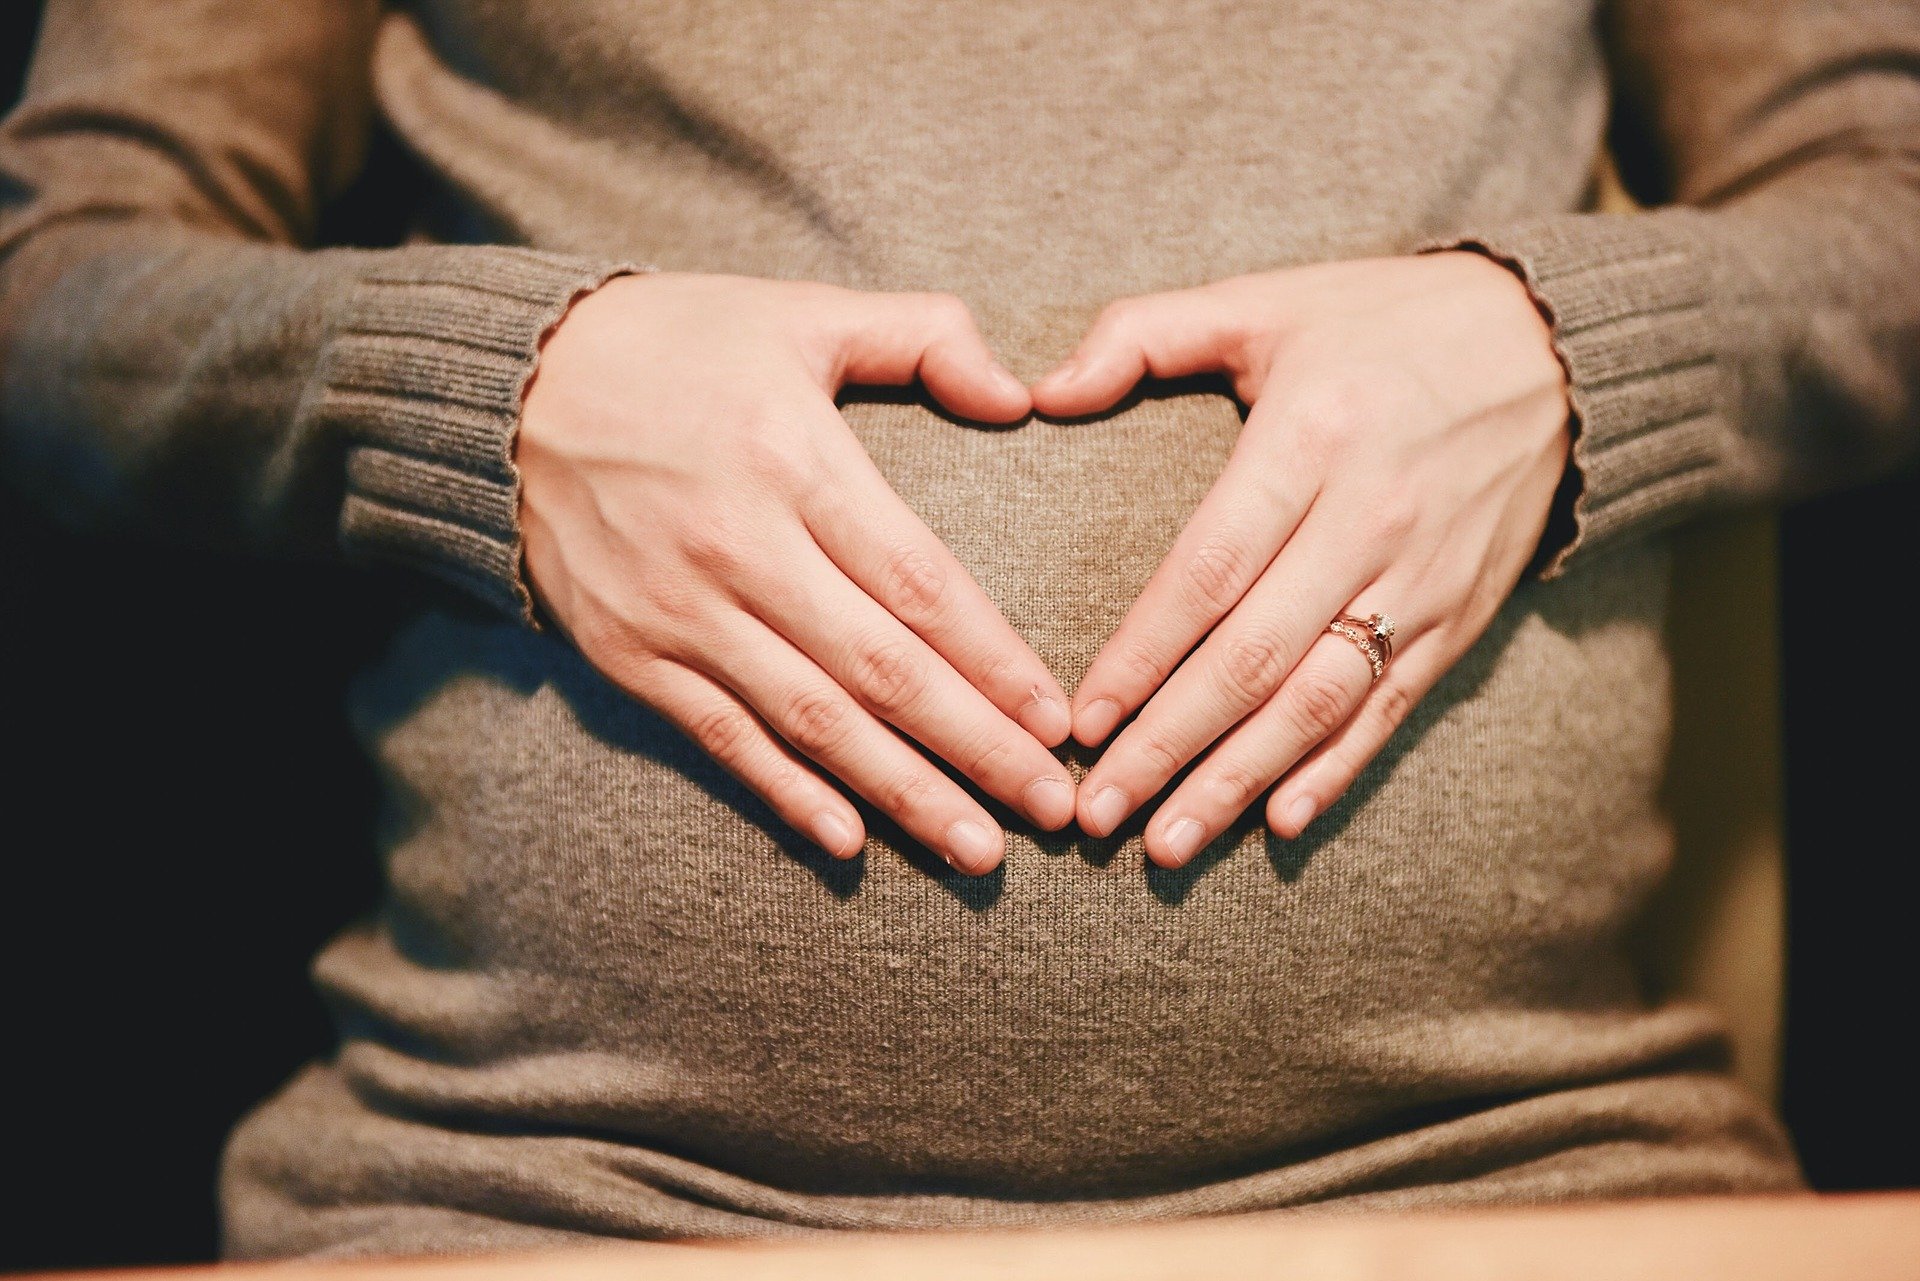 Гинеколог объяснил, когда беременной в самоизоляции стоит обратиться к врачу 